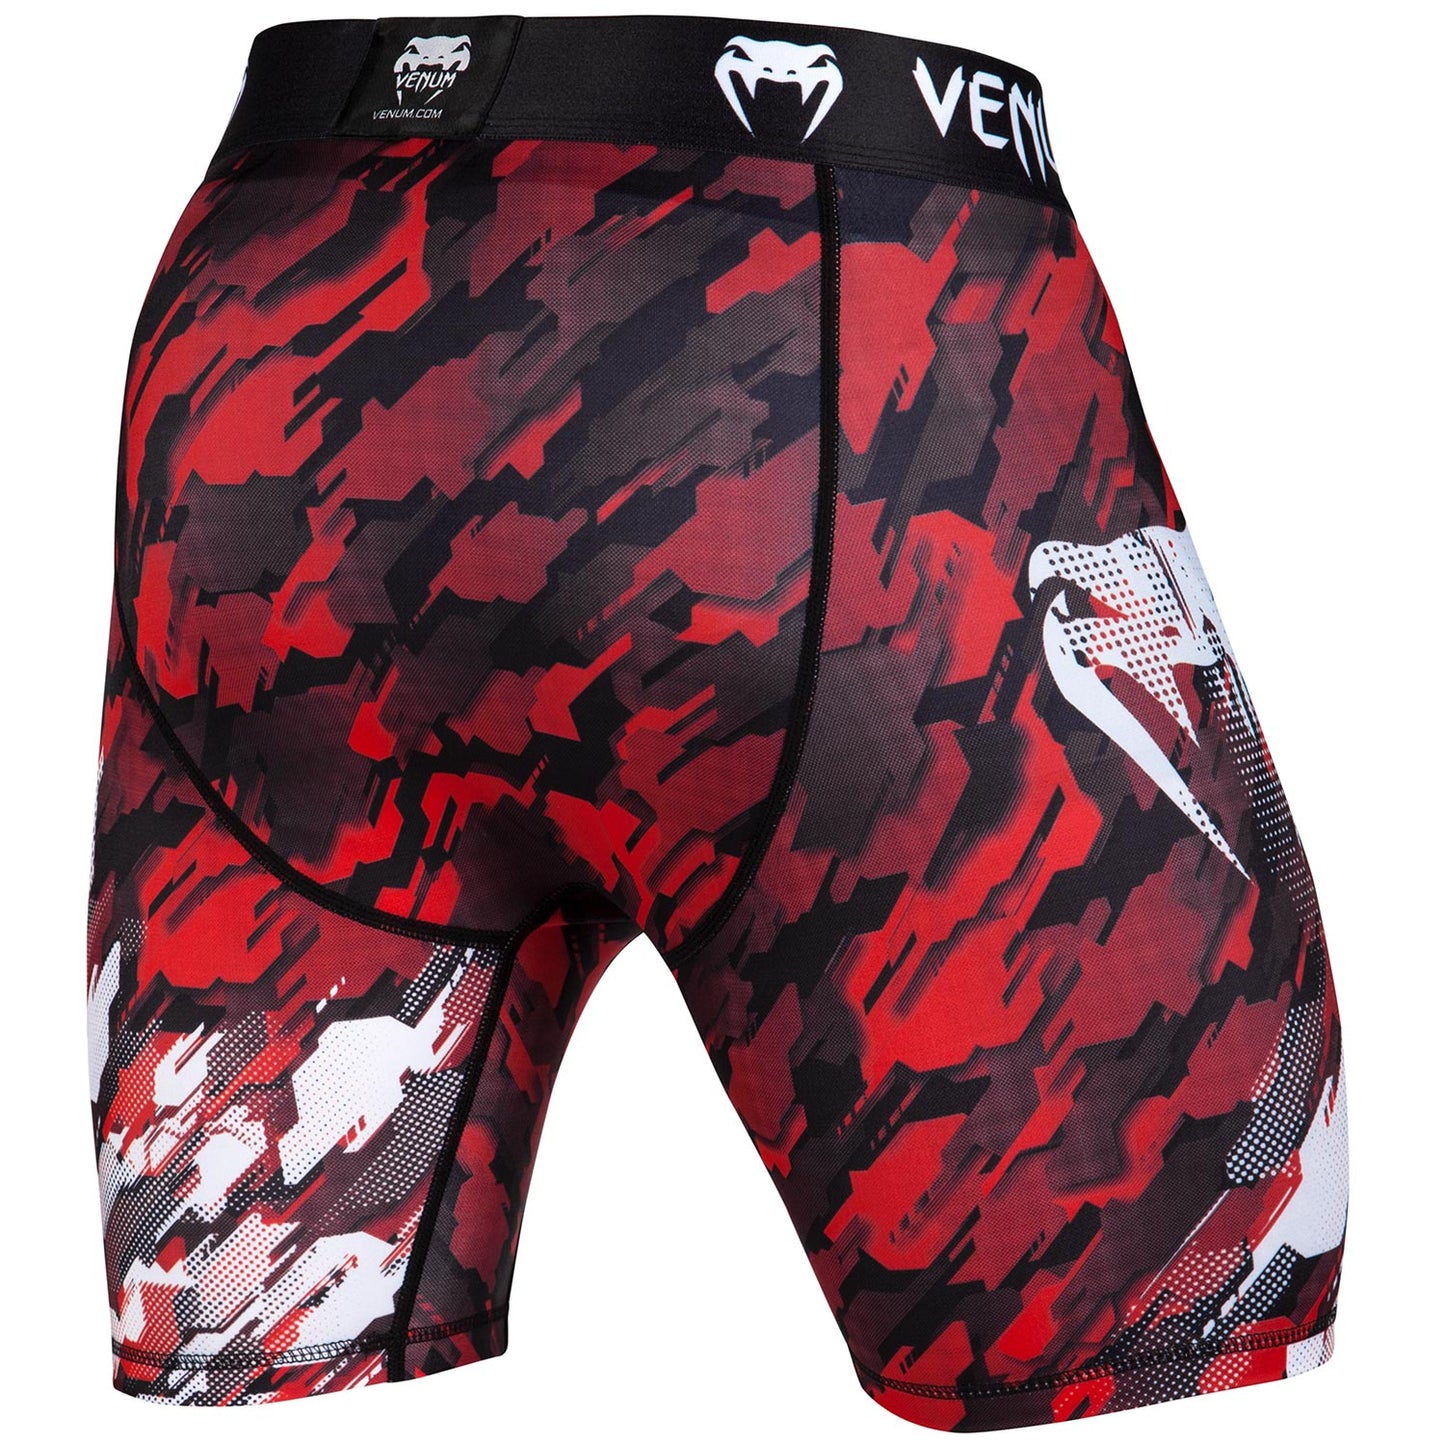 Venum Tecmo Compression Shorts - Red